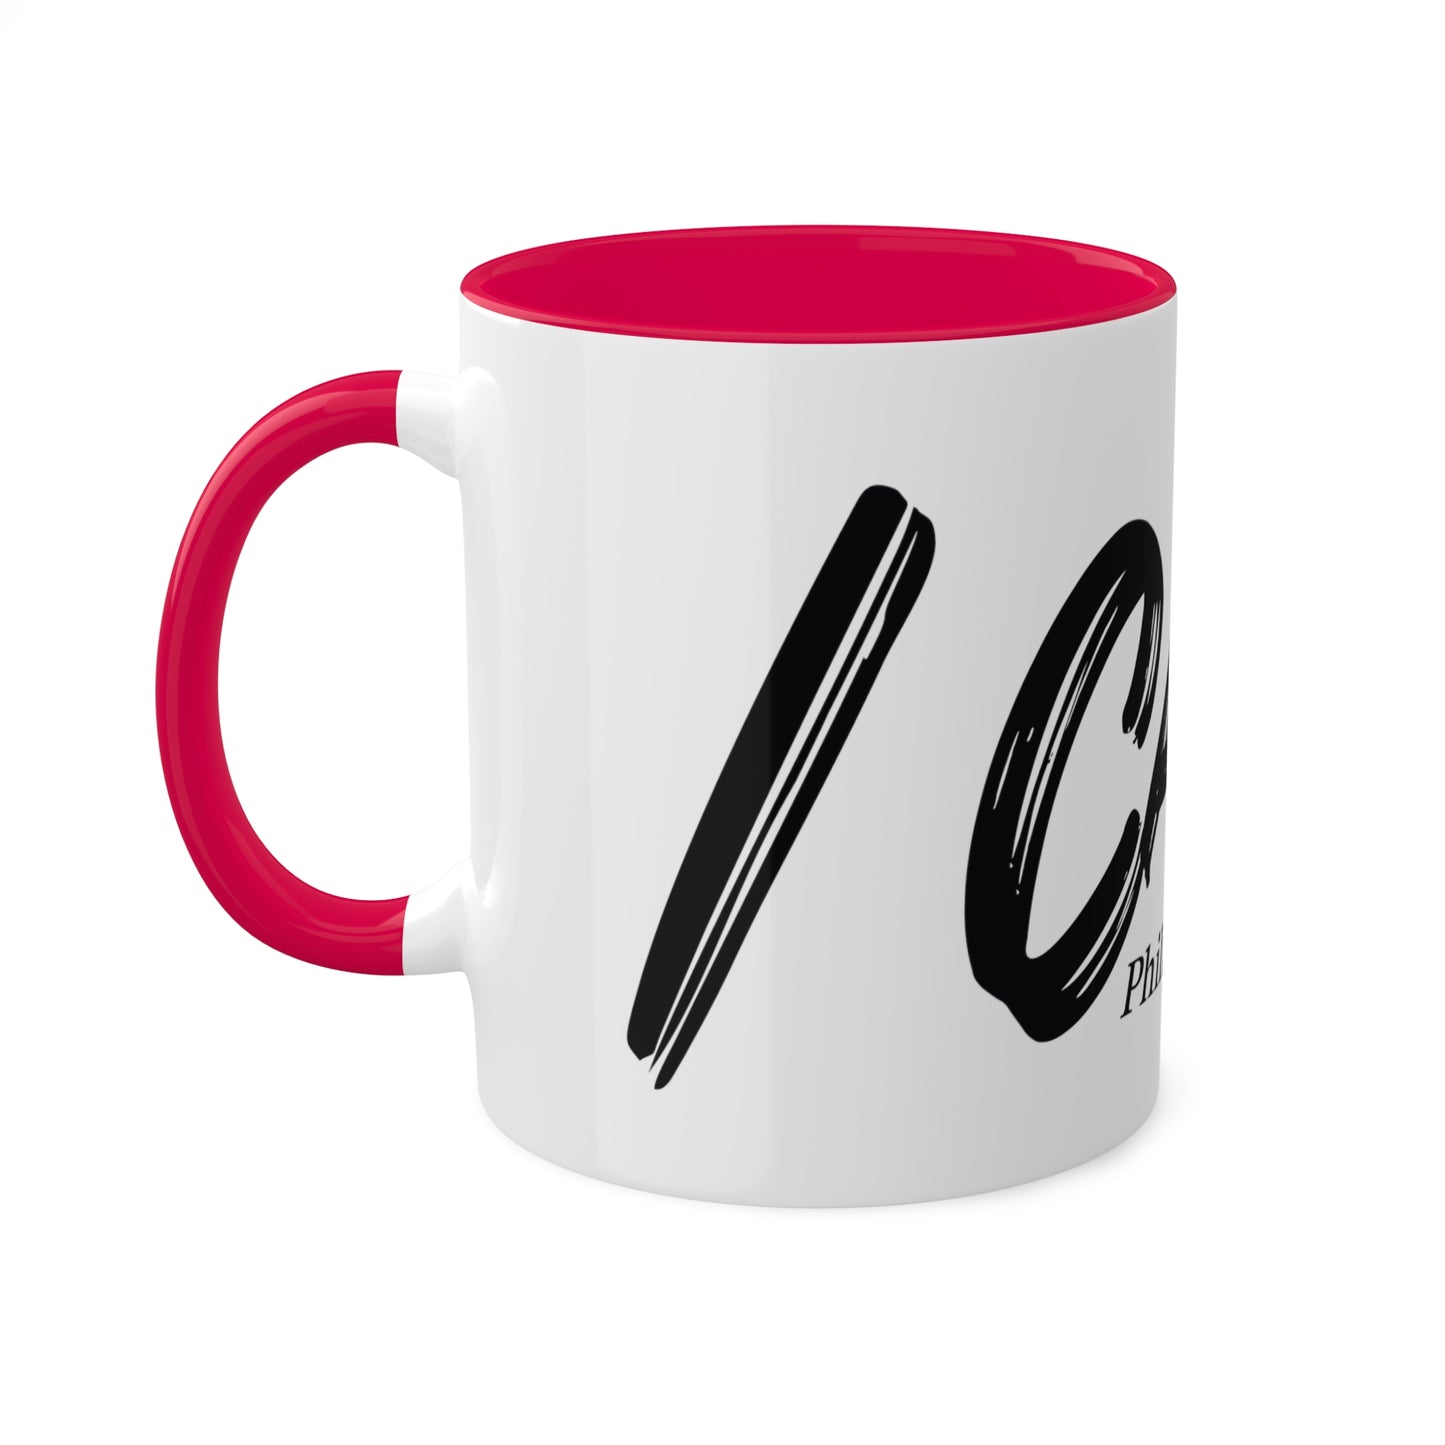 I Can't Classic * Red Mug, 11oz